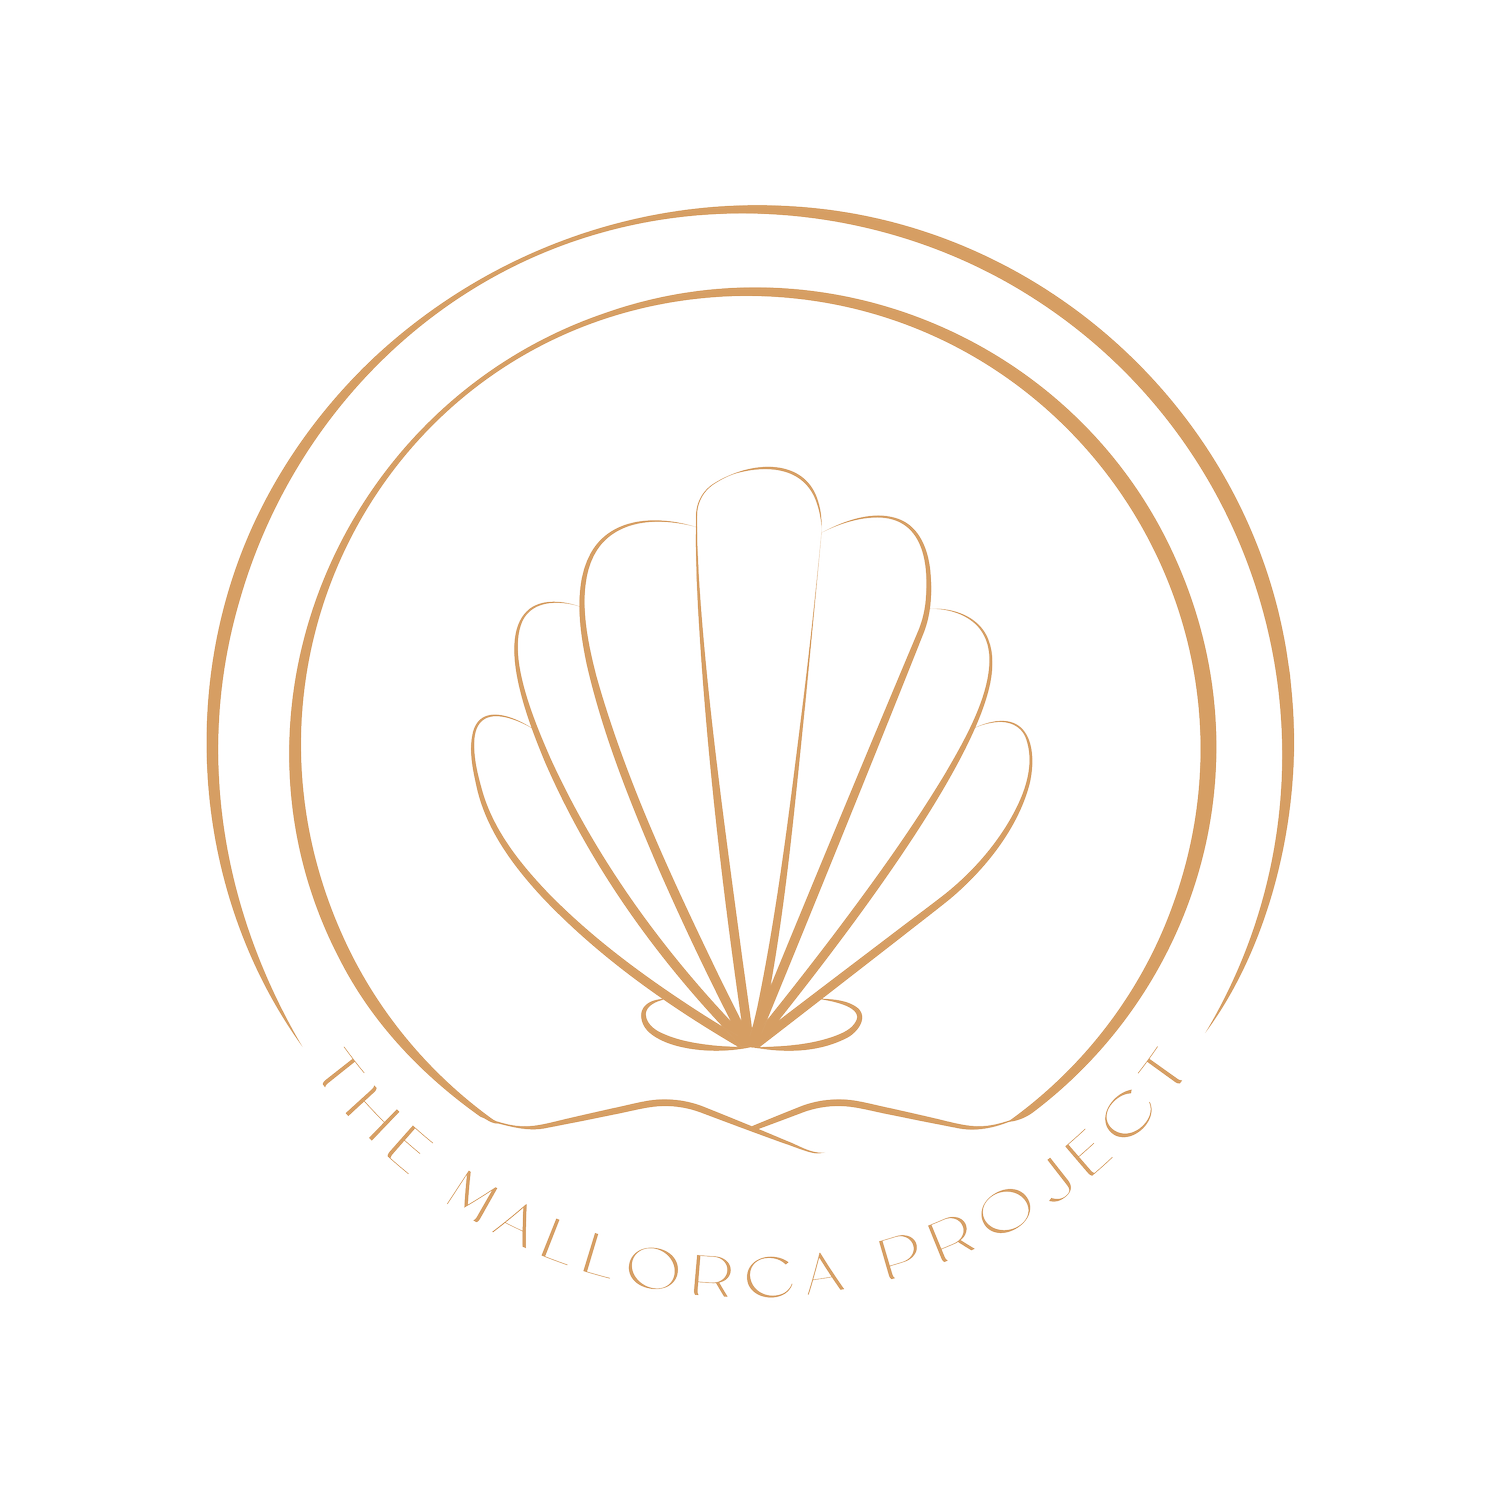 The Mallorca Project